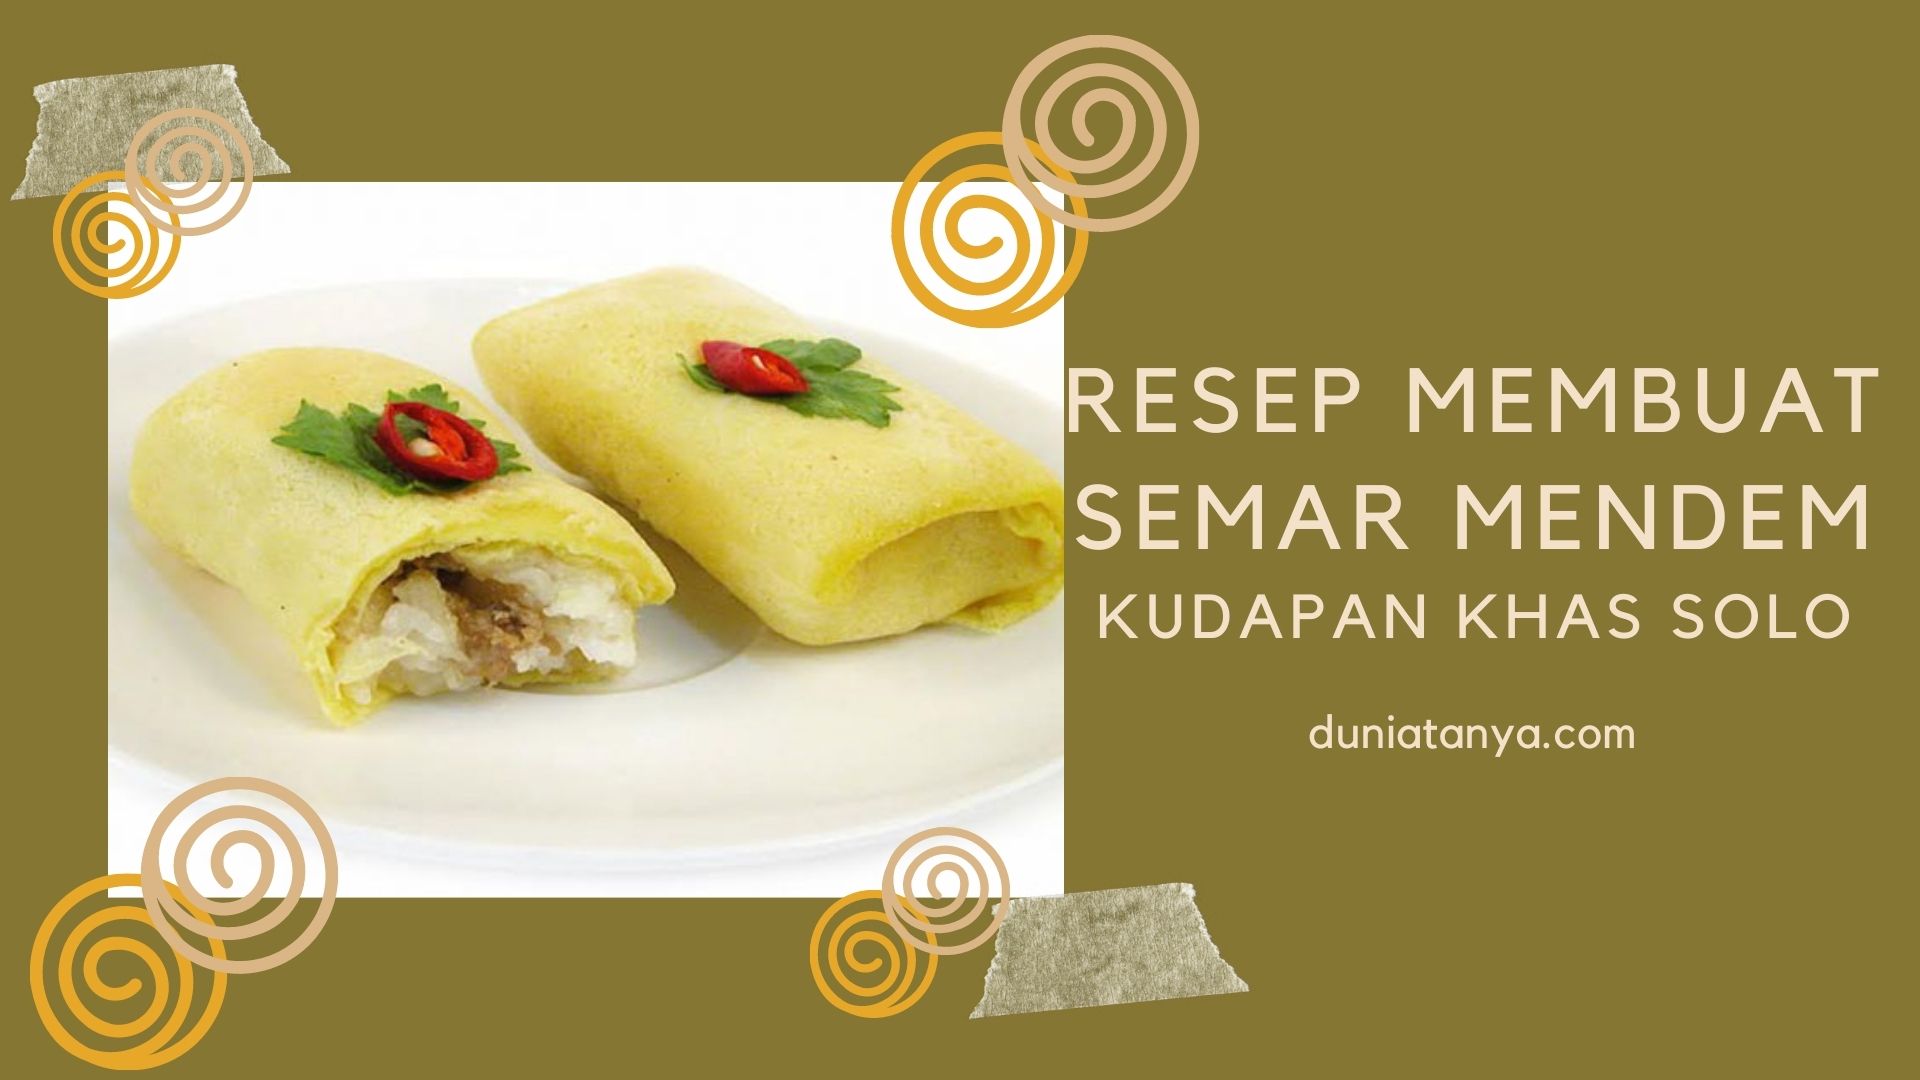 You are currently viewing Resep Membuat Semar Mendem,Kudapan Khas Solo